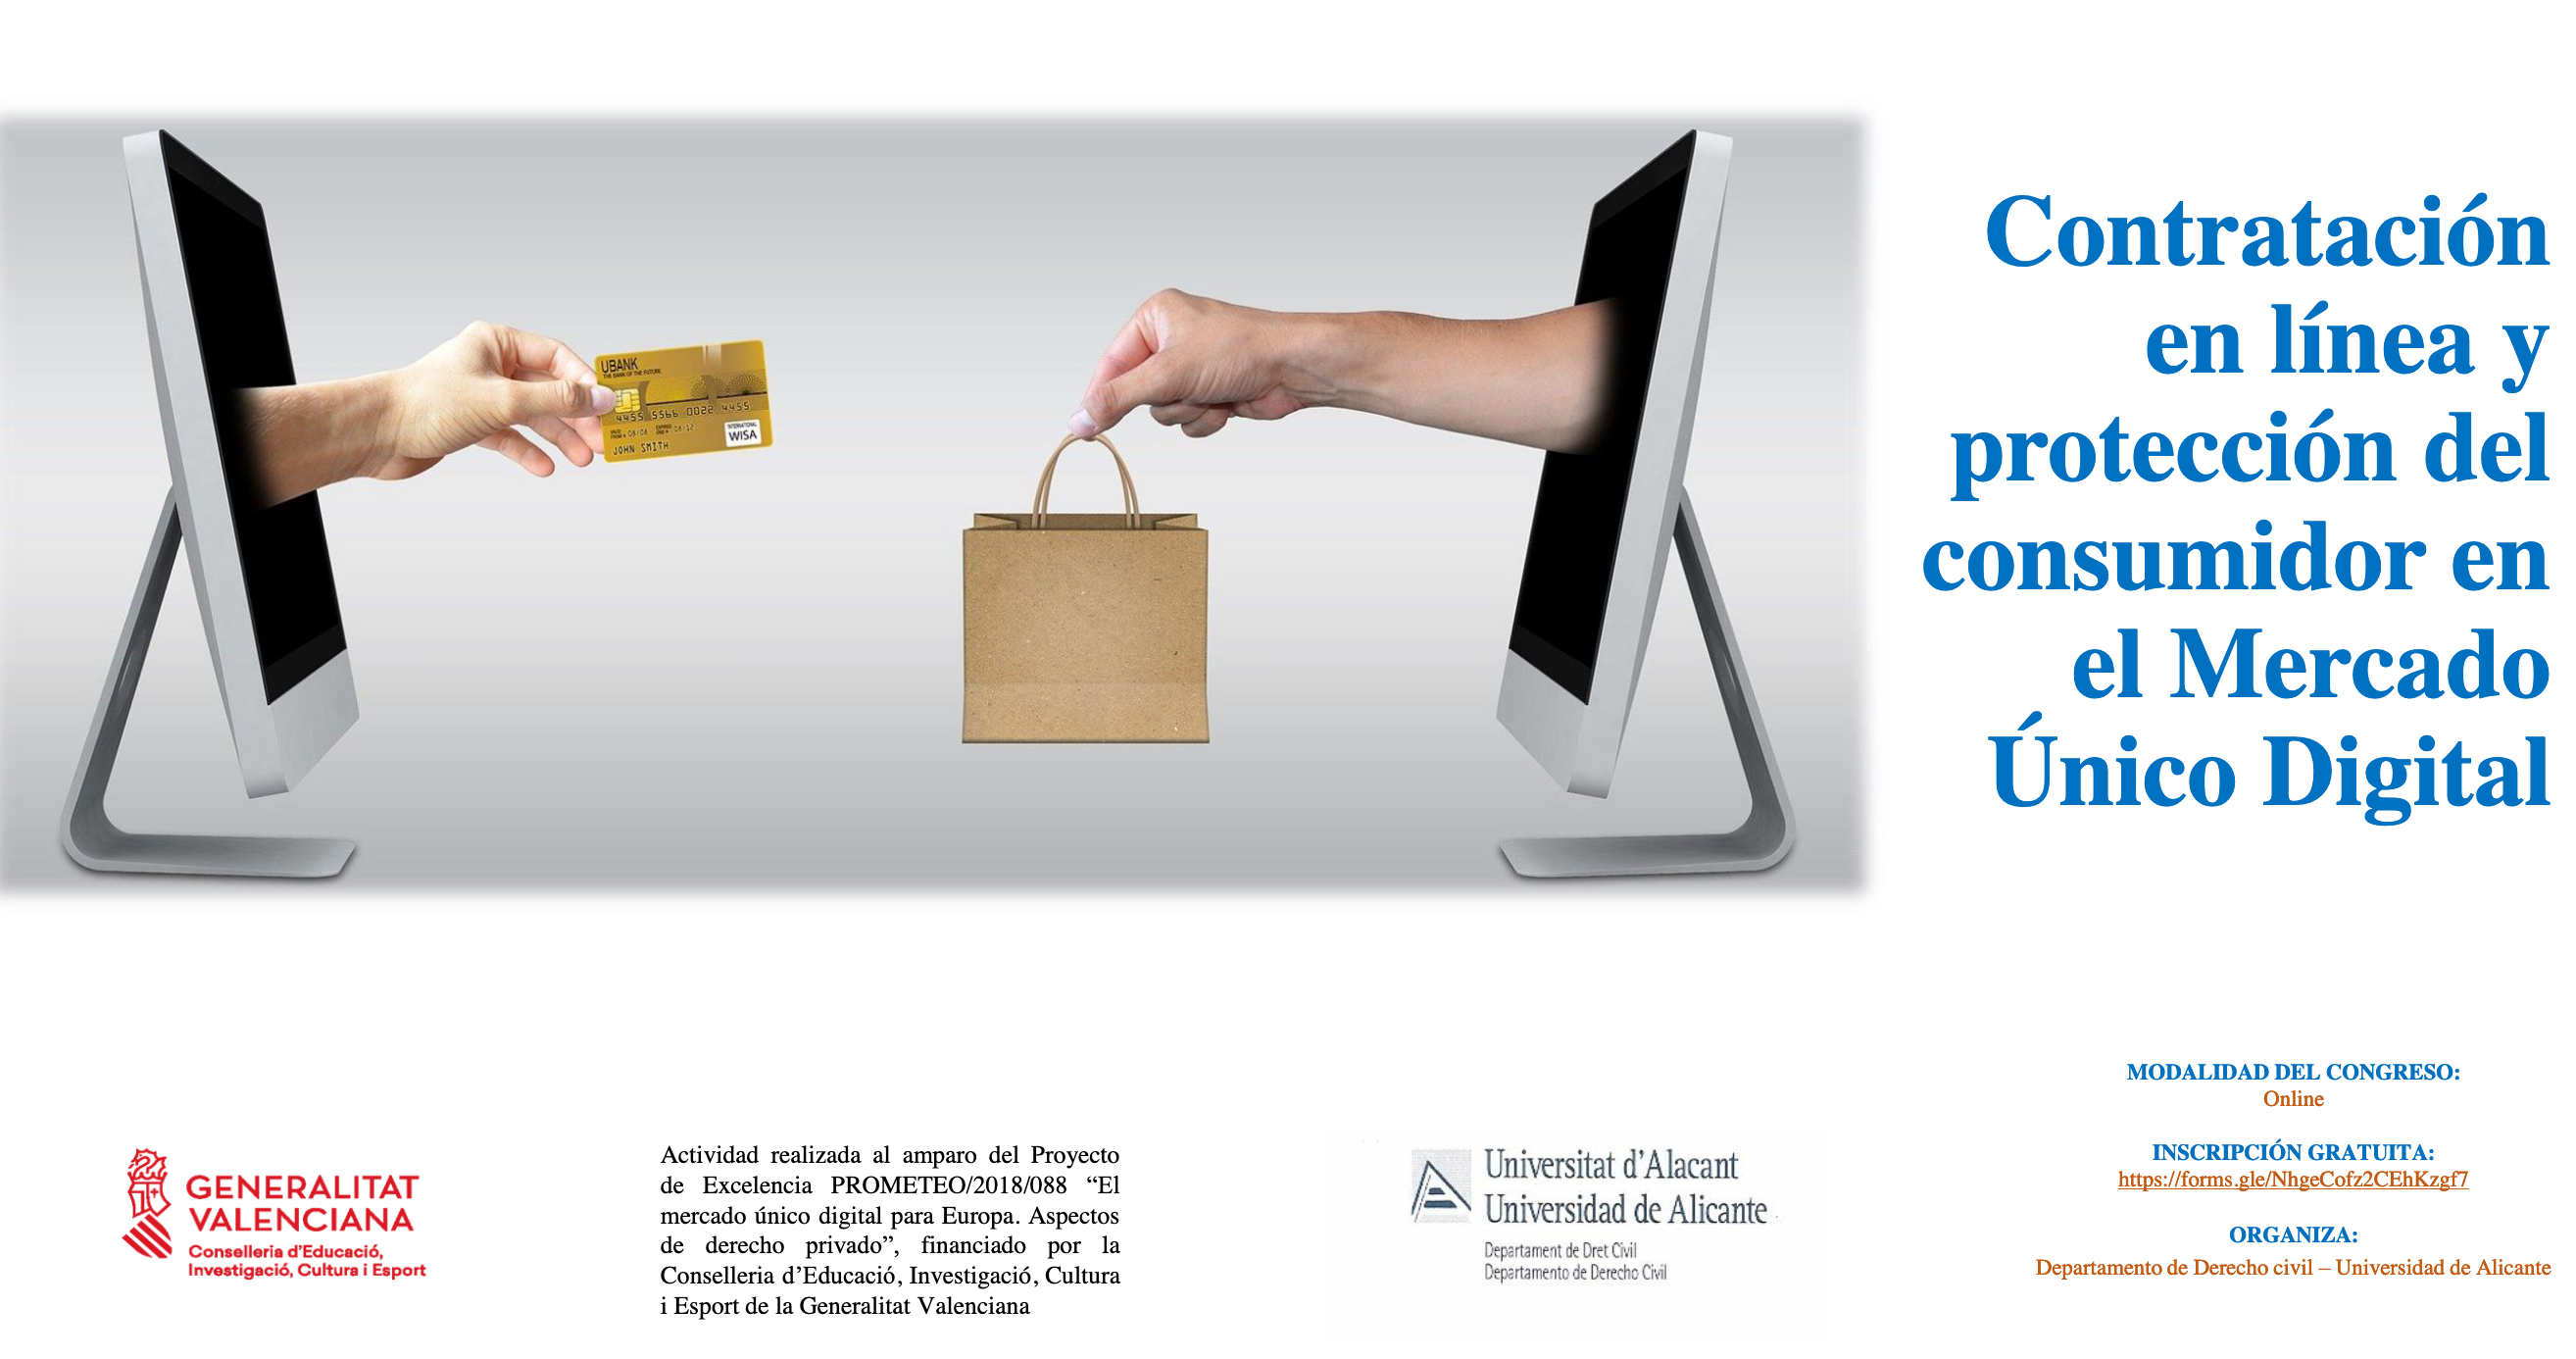 Contratación en línea y protección del consumidor en el Mercado Único Digital